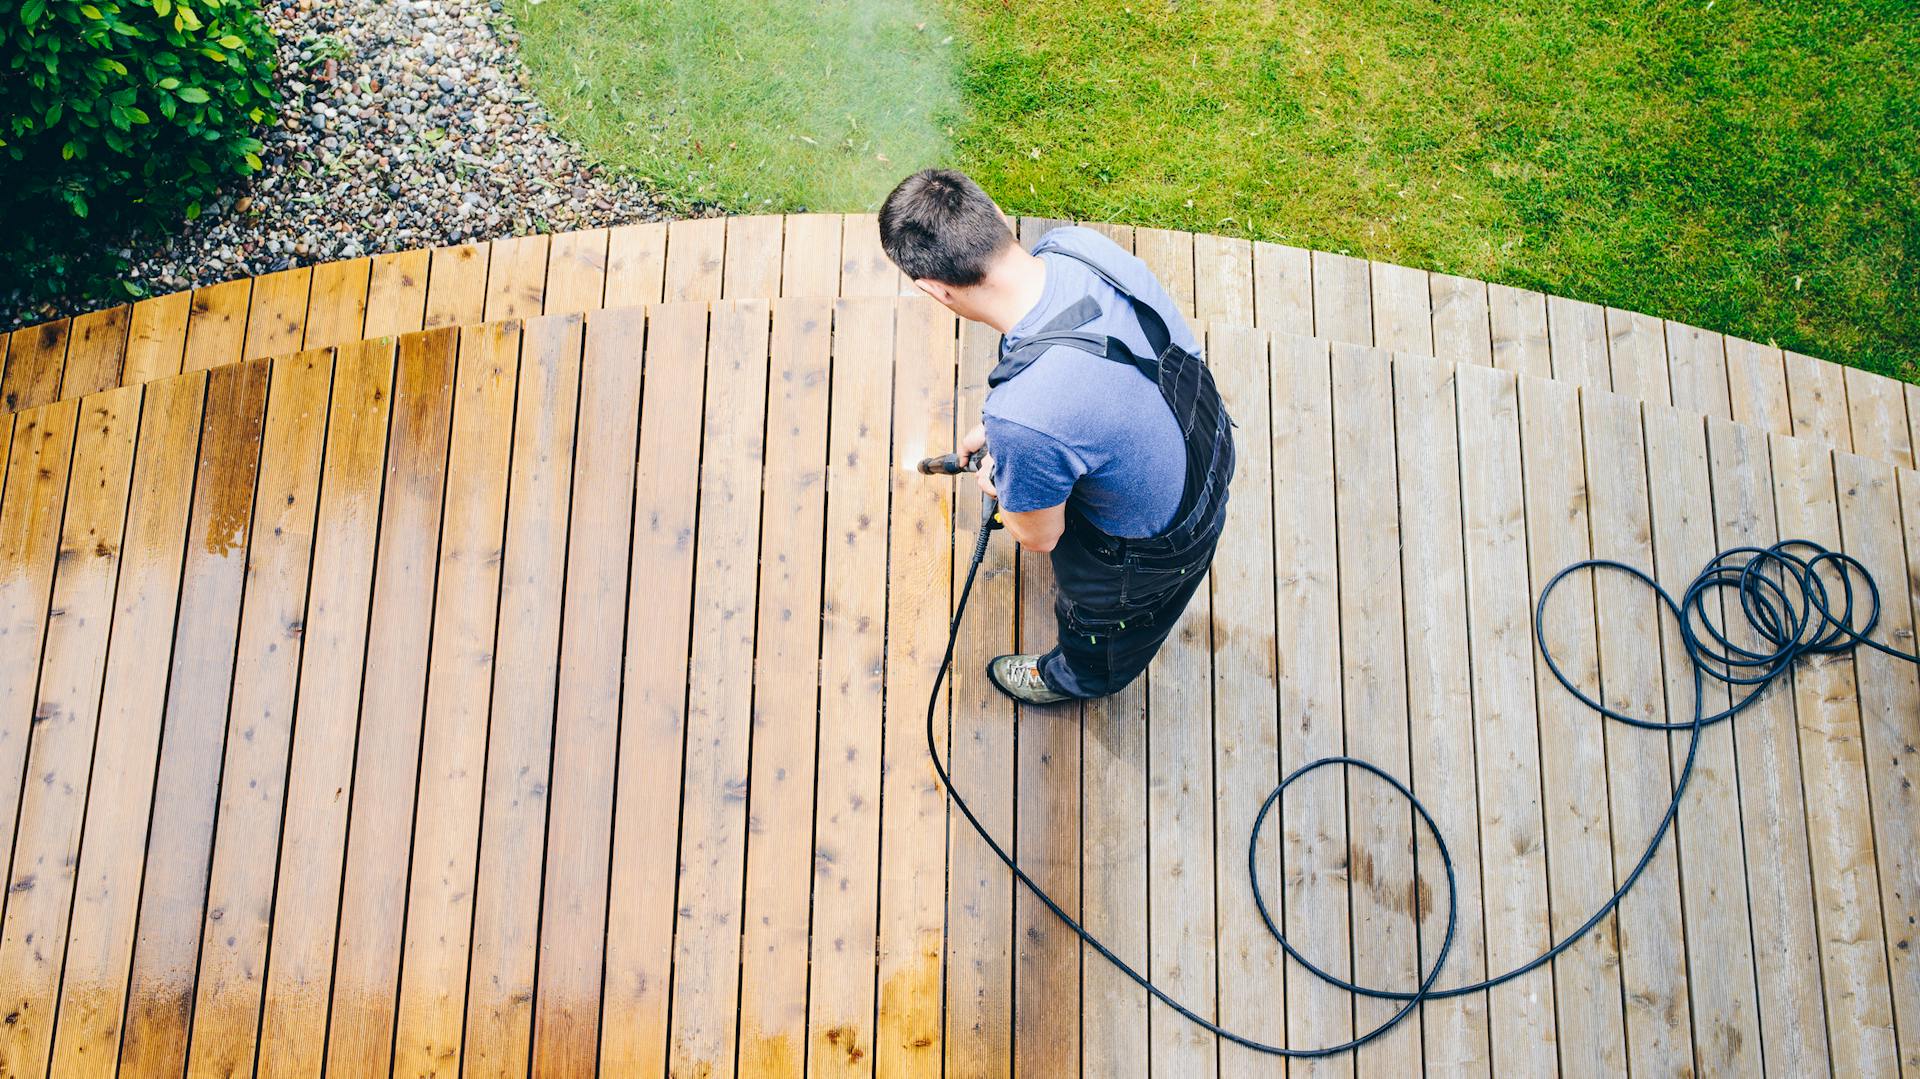 Il terrazzo in legno viene pulito da una persona con stivali di gomma con un’idropulitrice ad alta pressione.